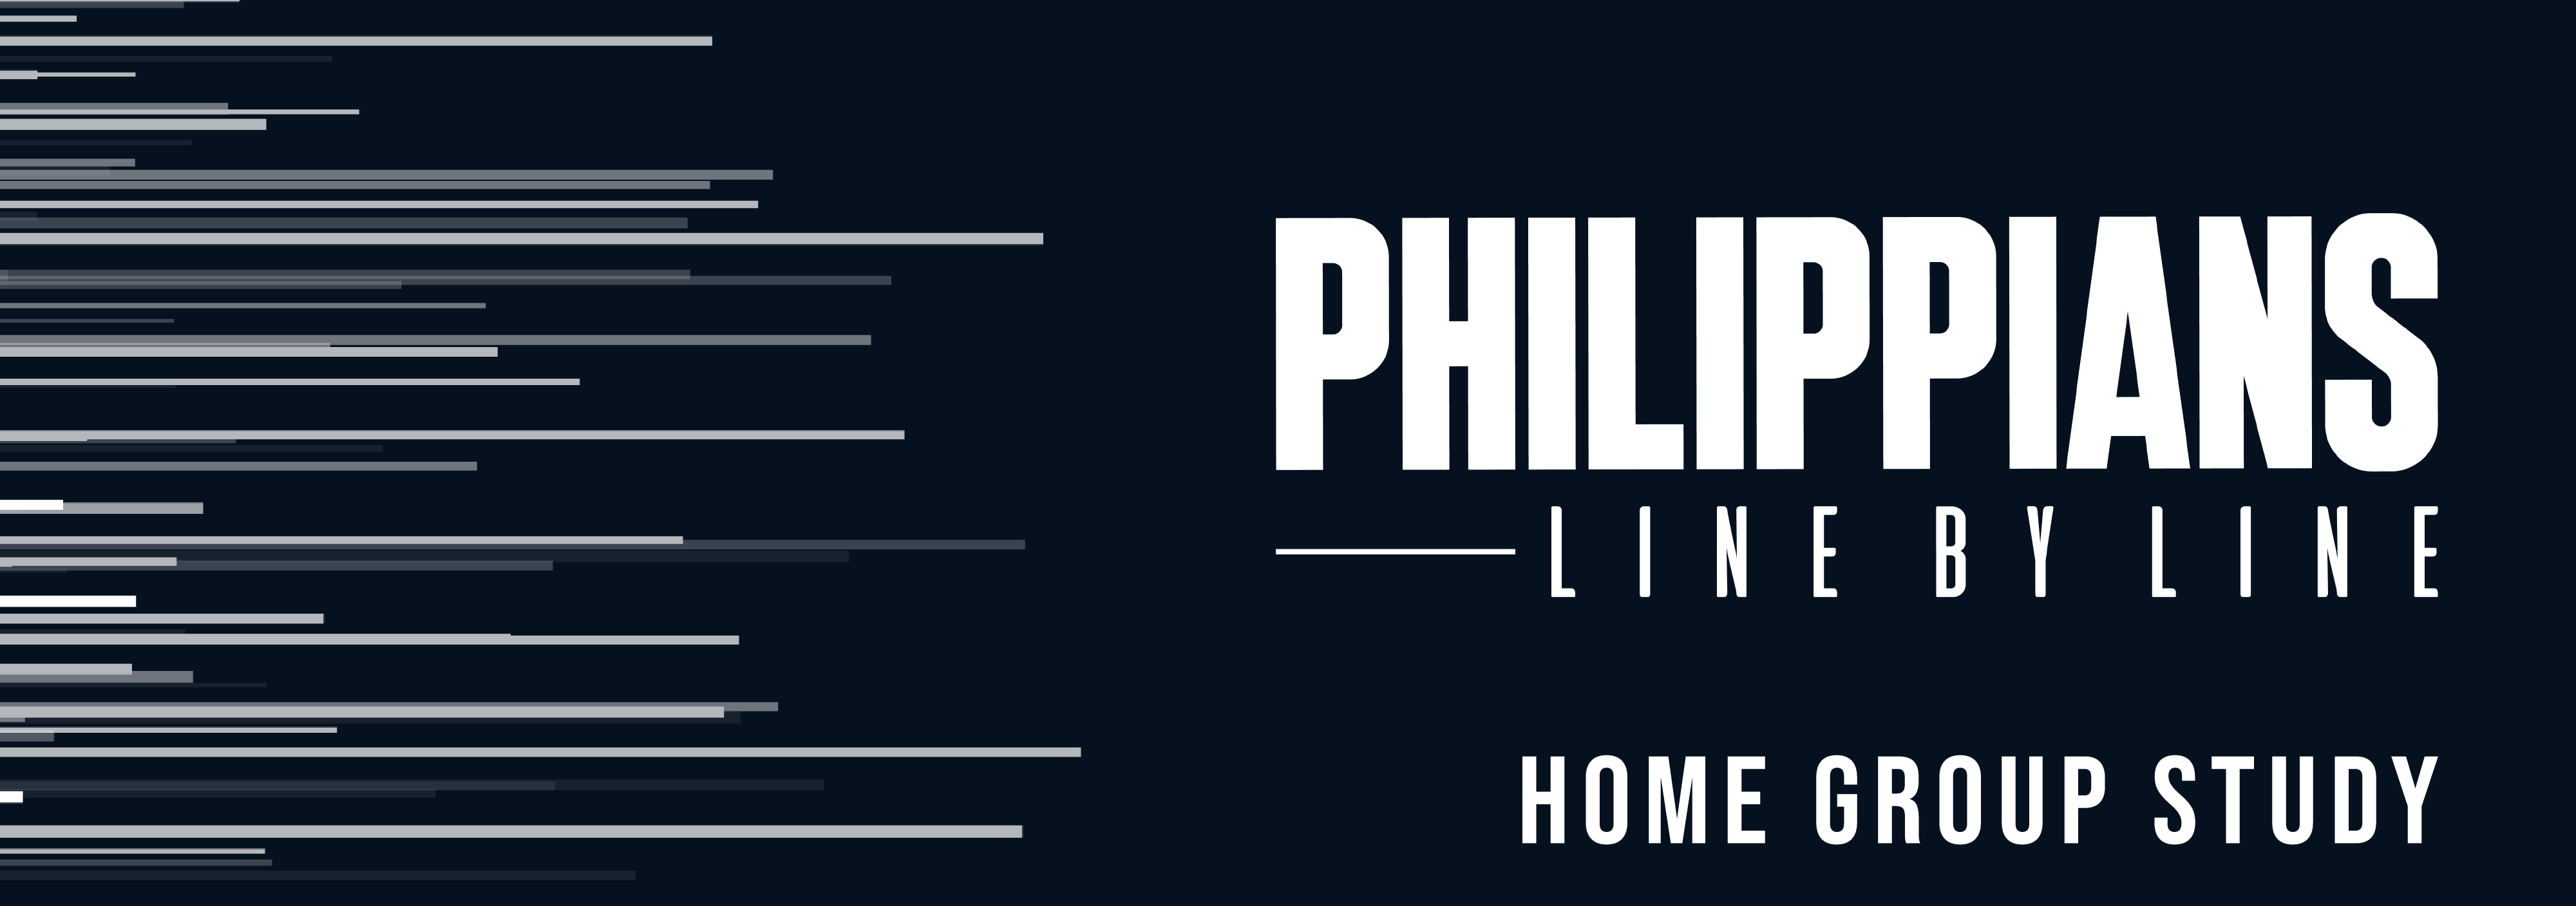 Philippians header 01